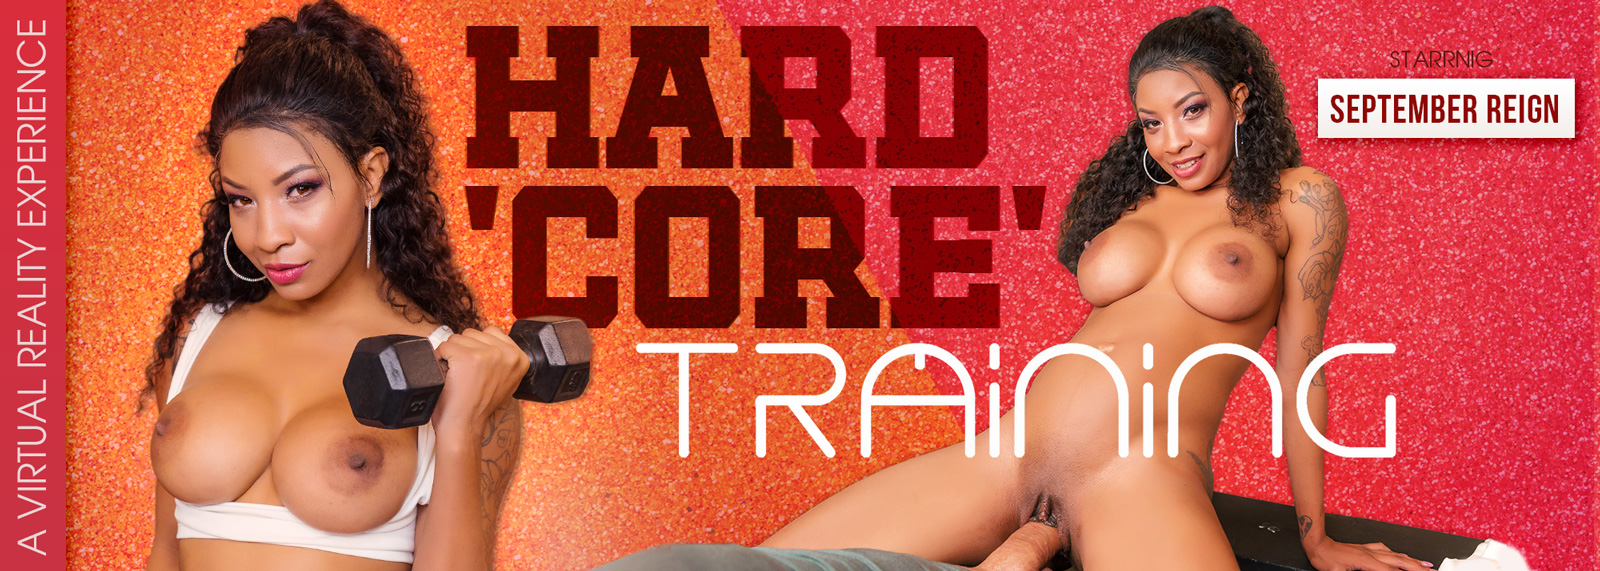 Hard 'Core' Training - VR Porn Video, Starring: September Reign